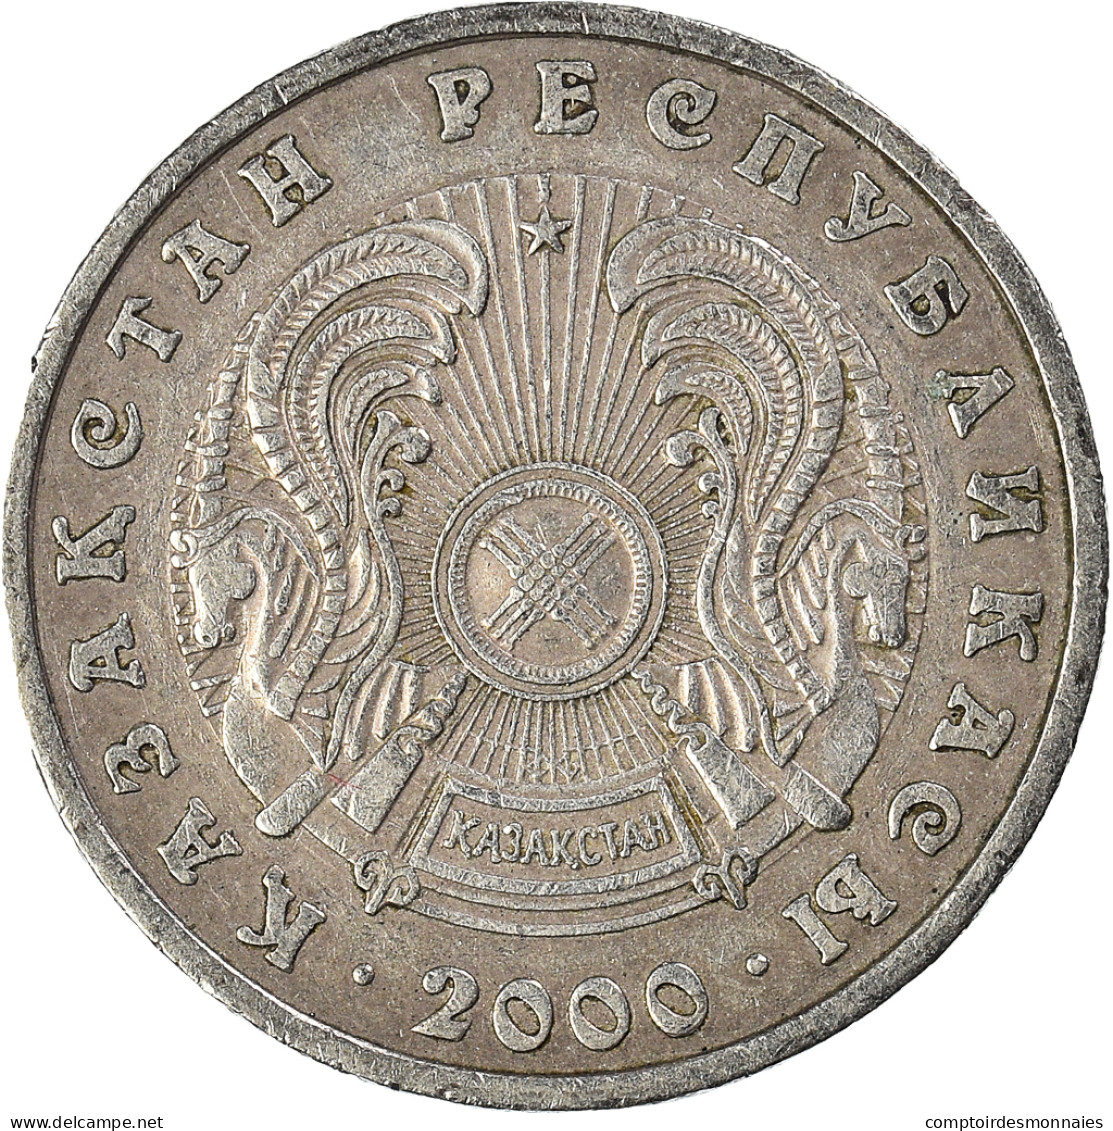 Monnaie, Kazakhstan, 50 Tenge, 2000 - Kazakhstan